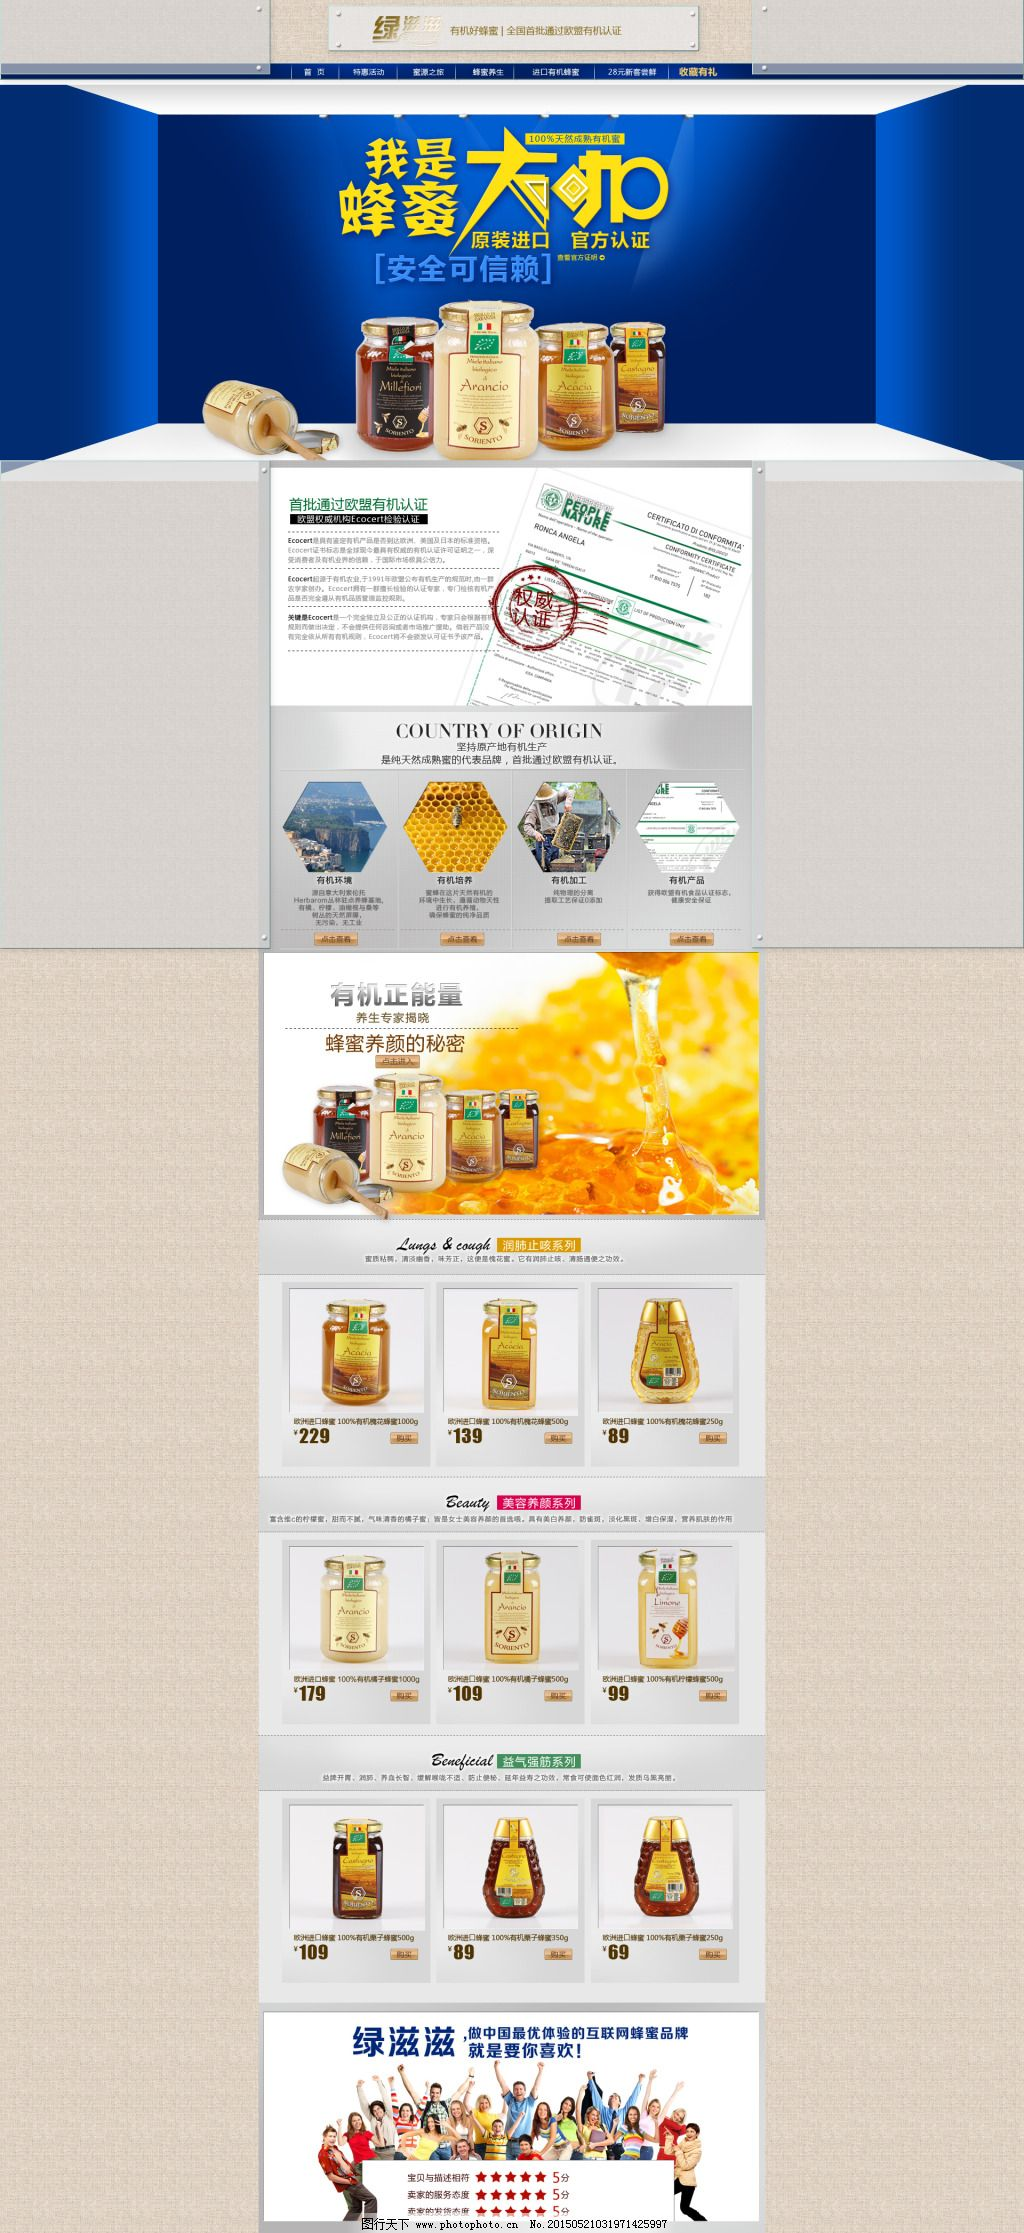 ‘~淘宝有机食品促销页面PSD素材图片_食品茶饮_电商图片-  ~’ 的图片